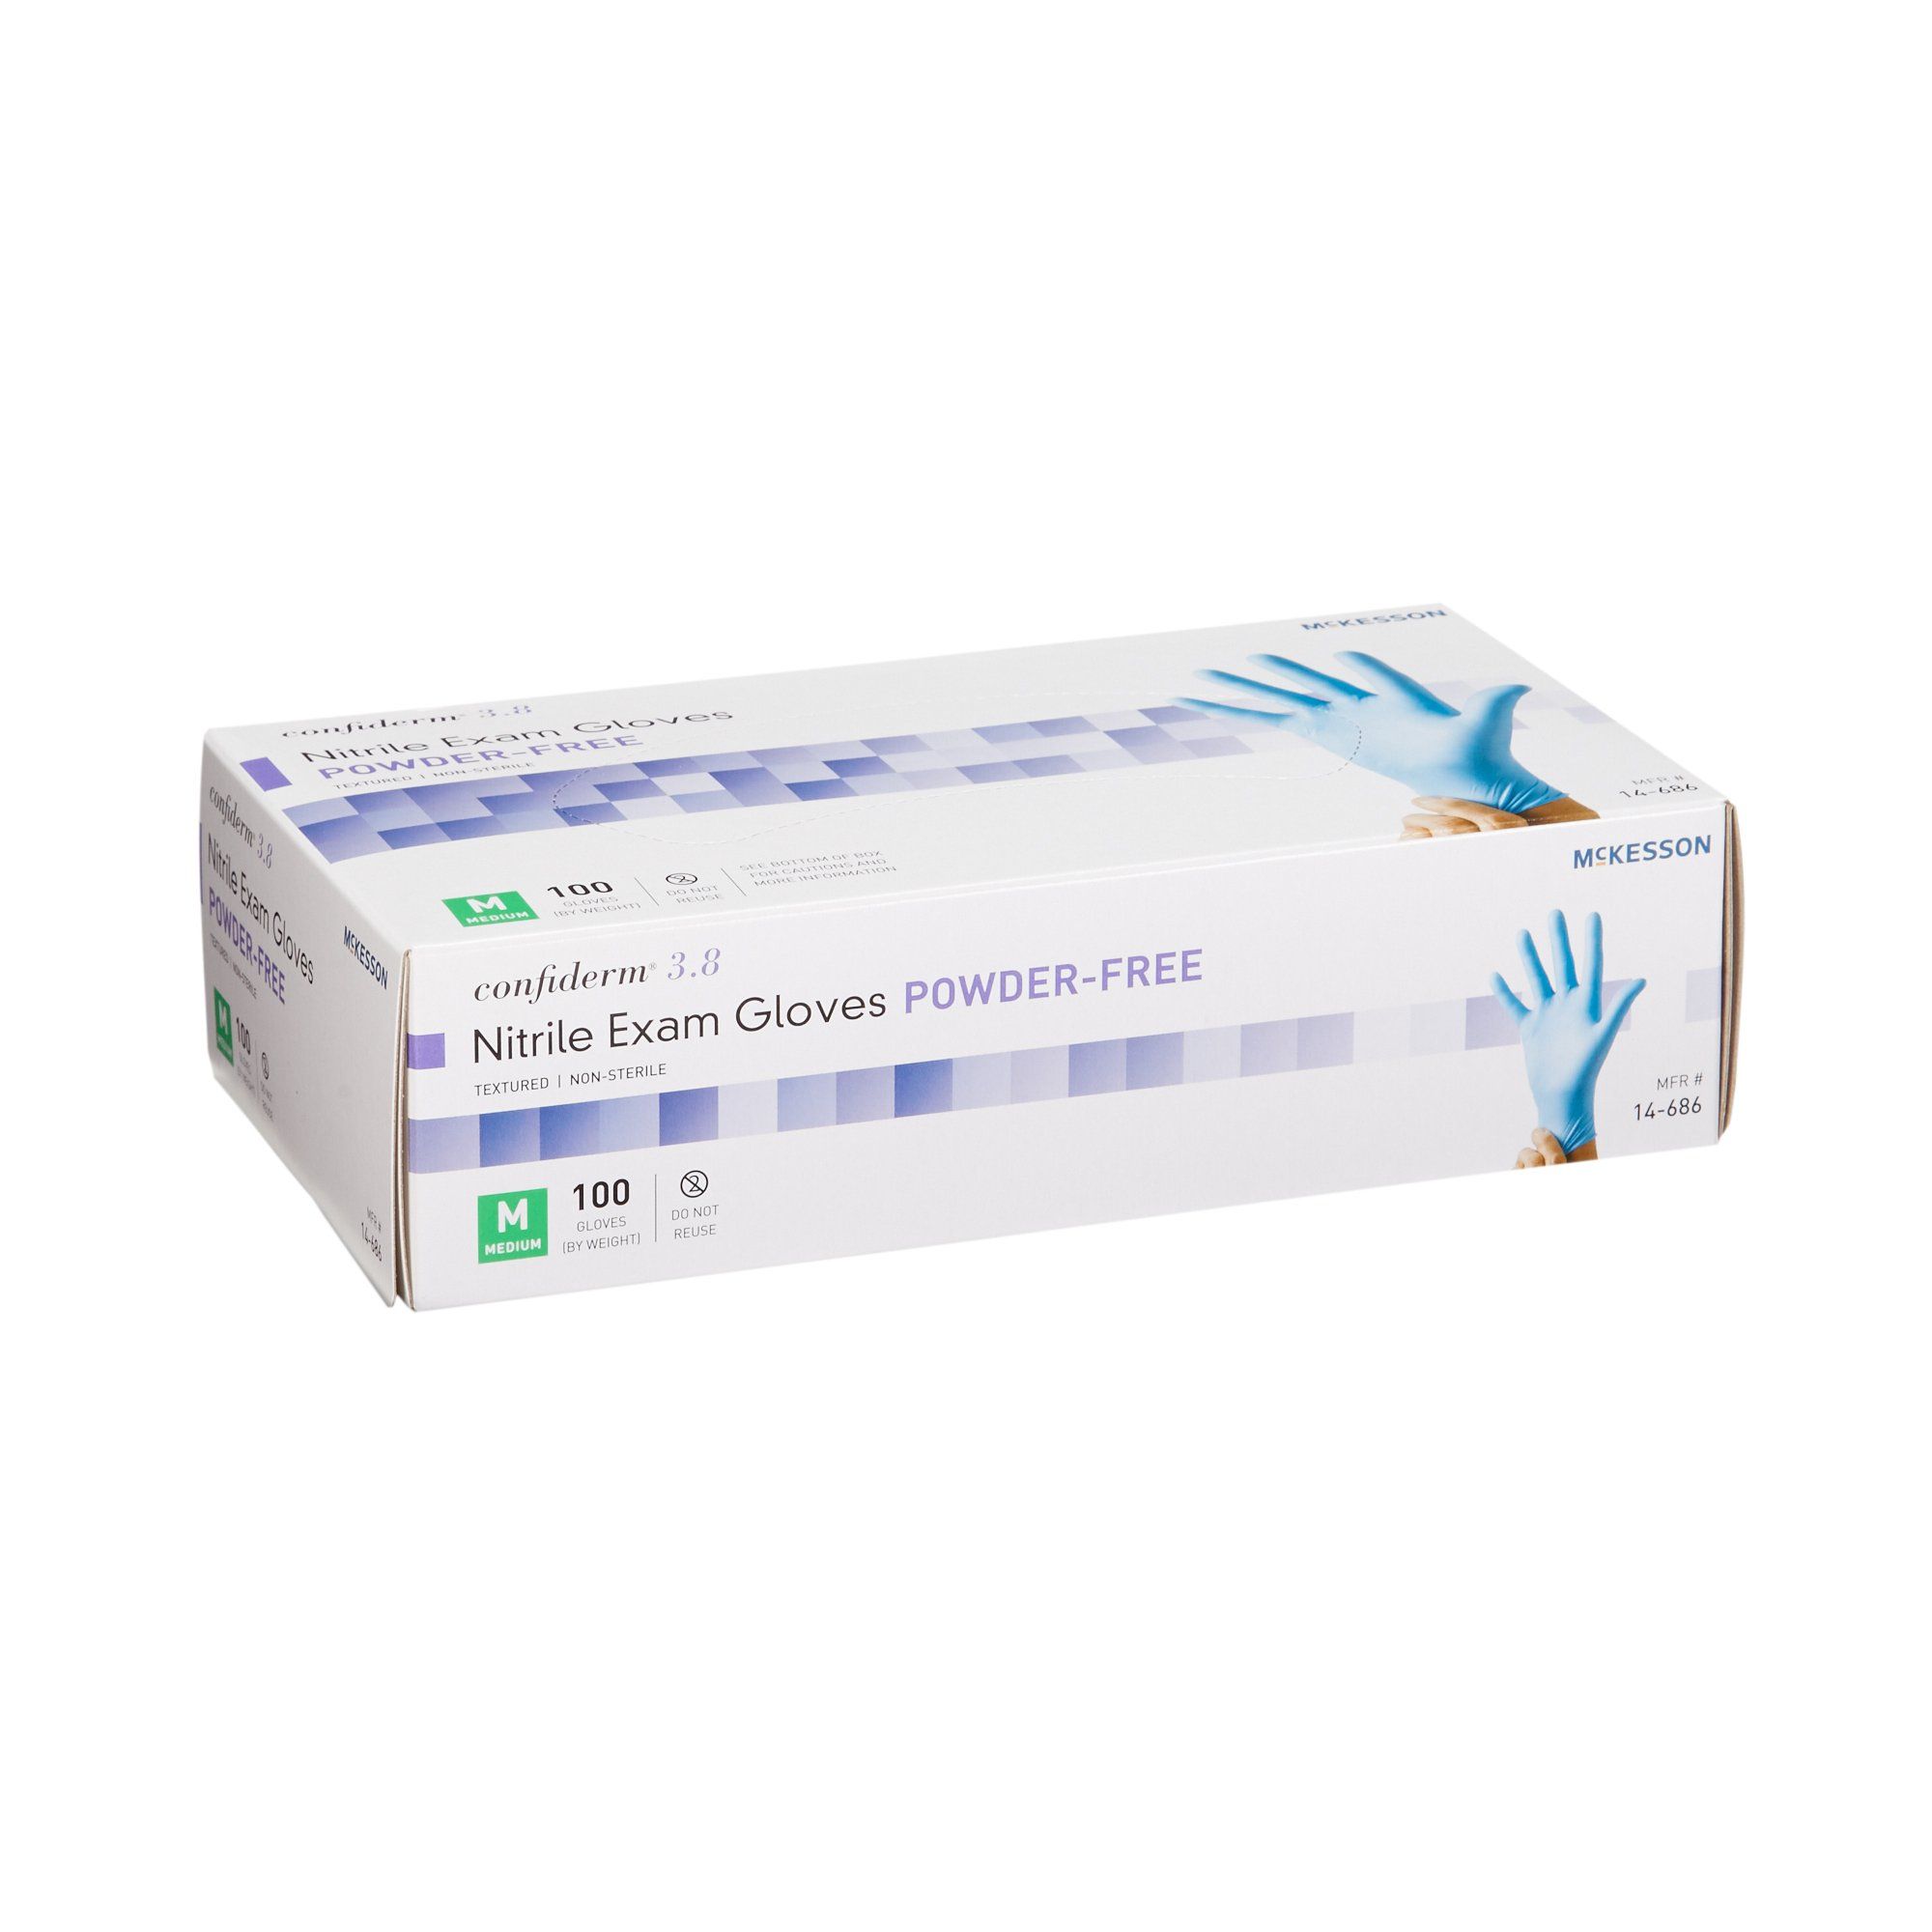 McKesson Confiderm® 3.8 Nitrile Exam Gloves, Medium - 100 ct